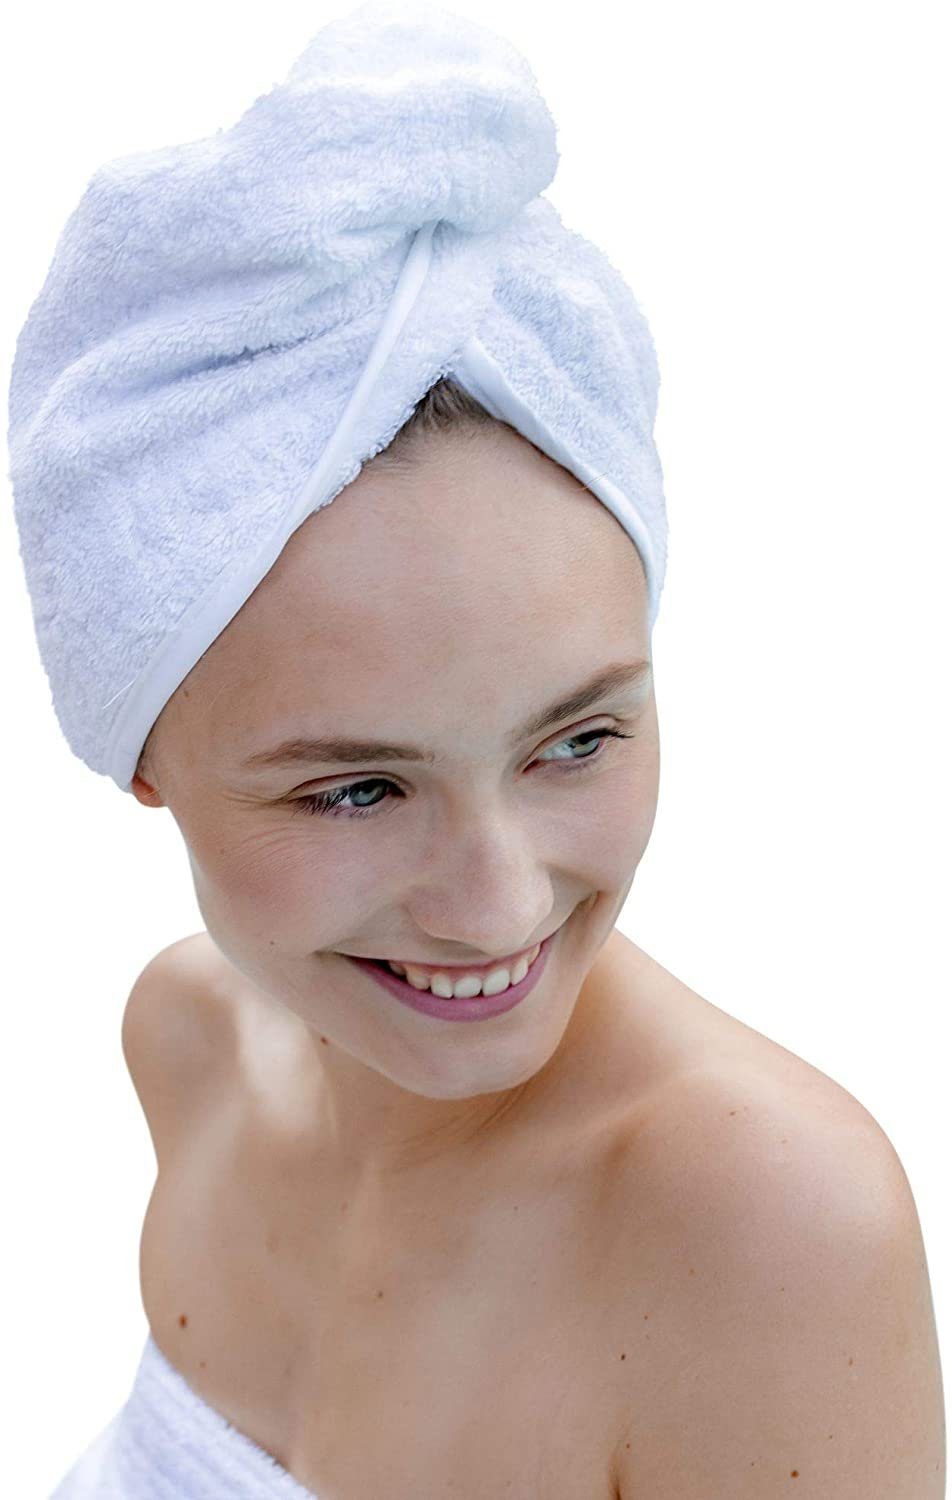 Knopf Turban-Handtuch aus mit Mikroplastik Baumwolle weiß saugstark Haarhandtuch Stabiles hair OHNE Haarturban Schlaufe towel, 100% Baumwolle & Carenesse